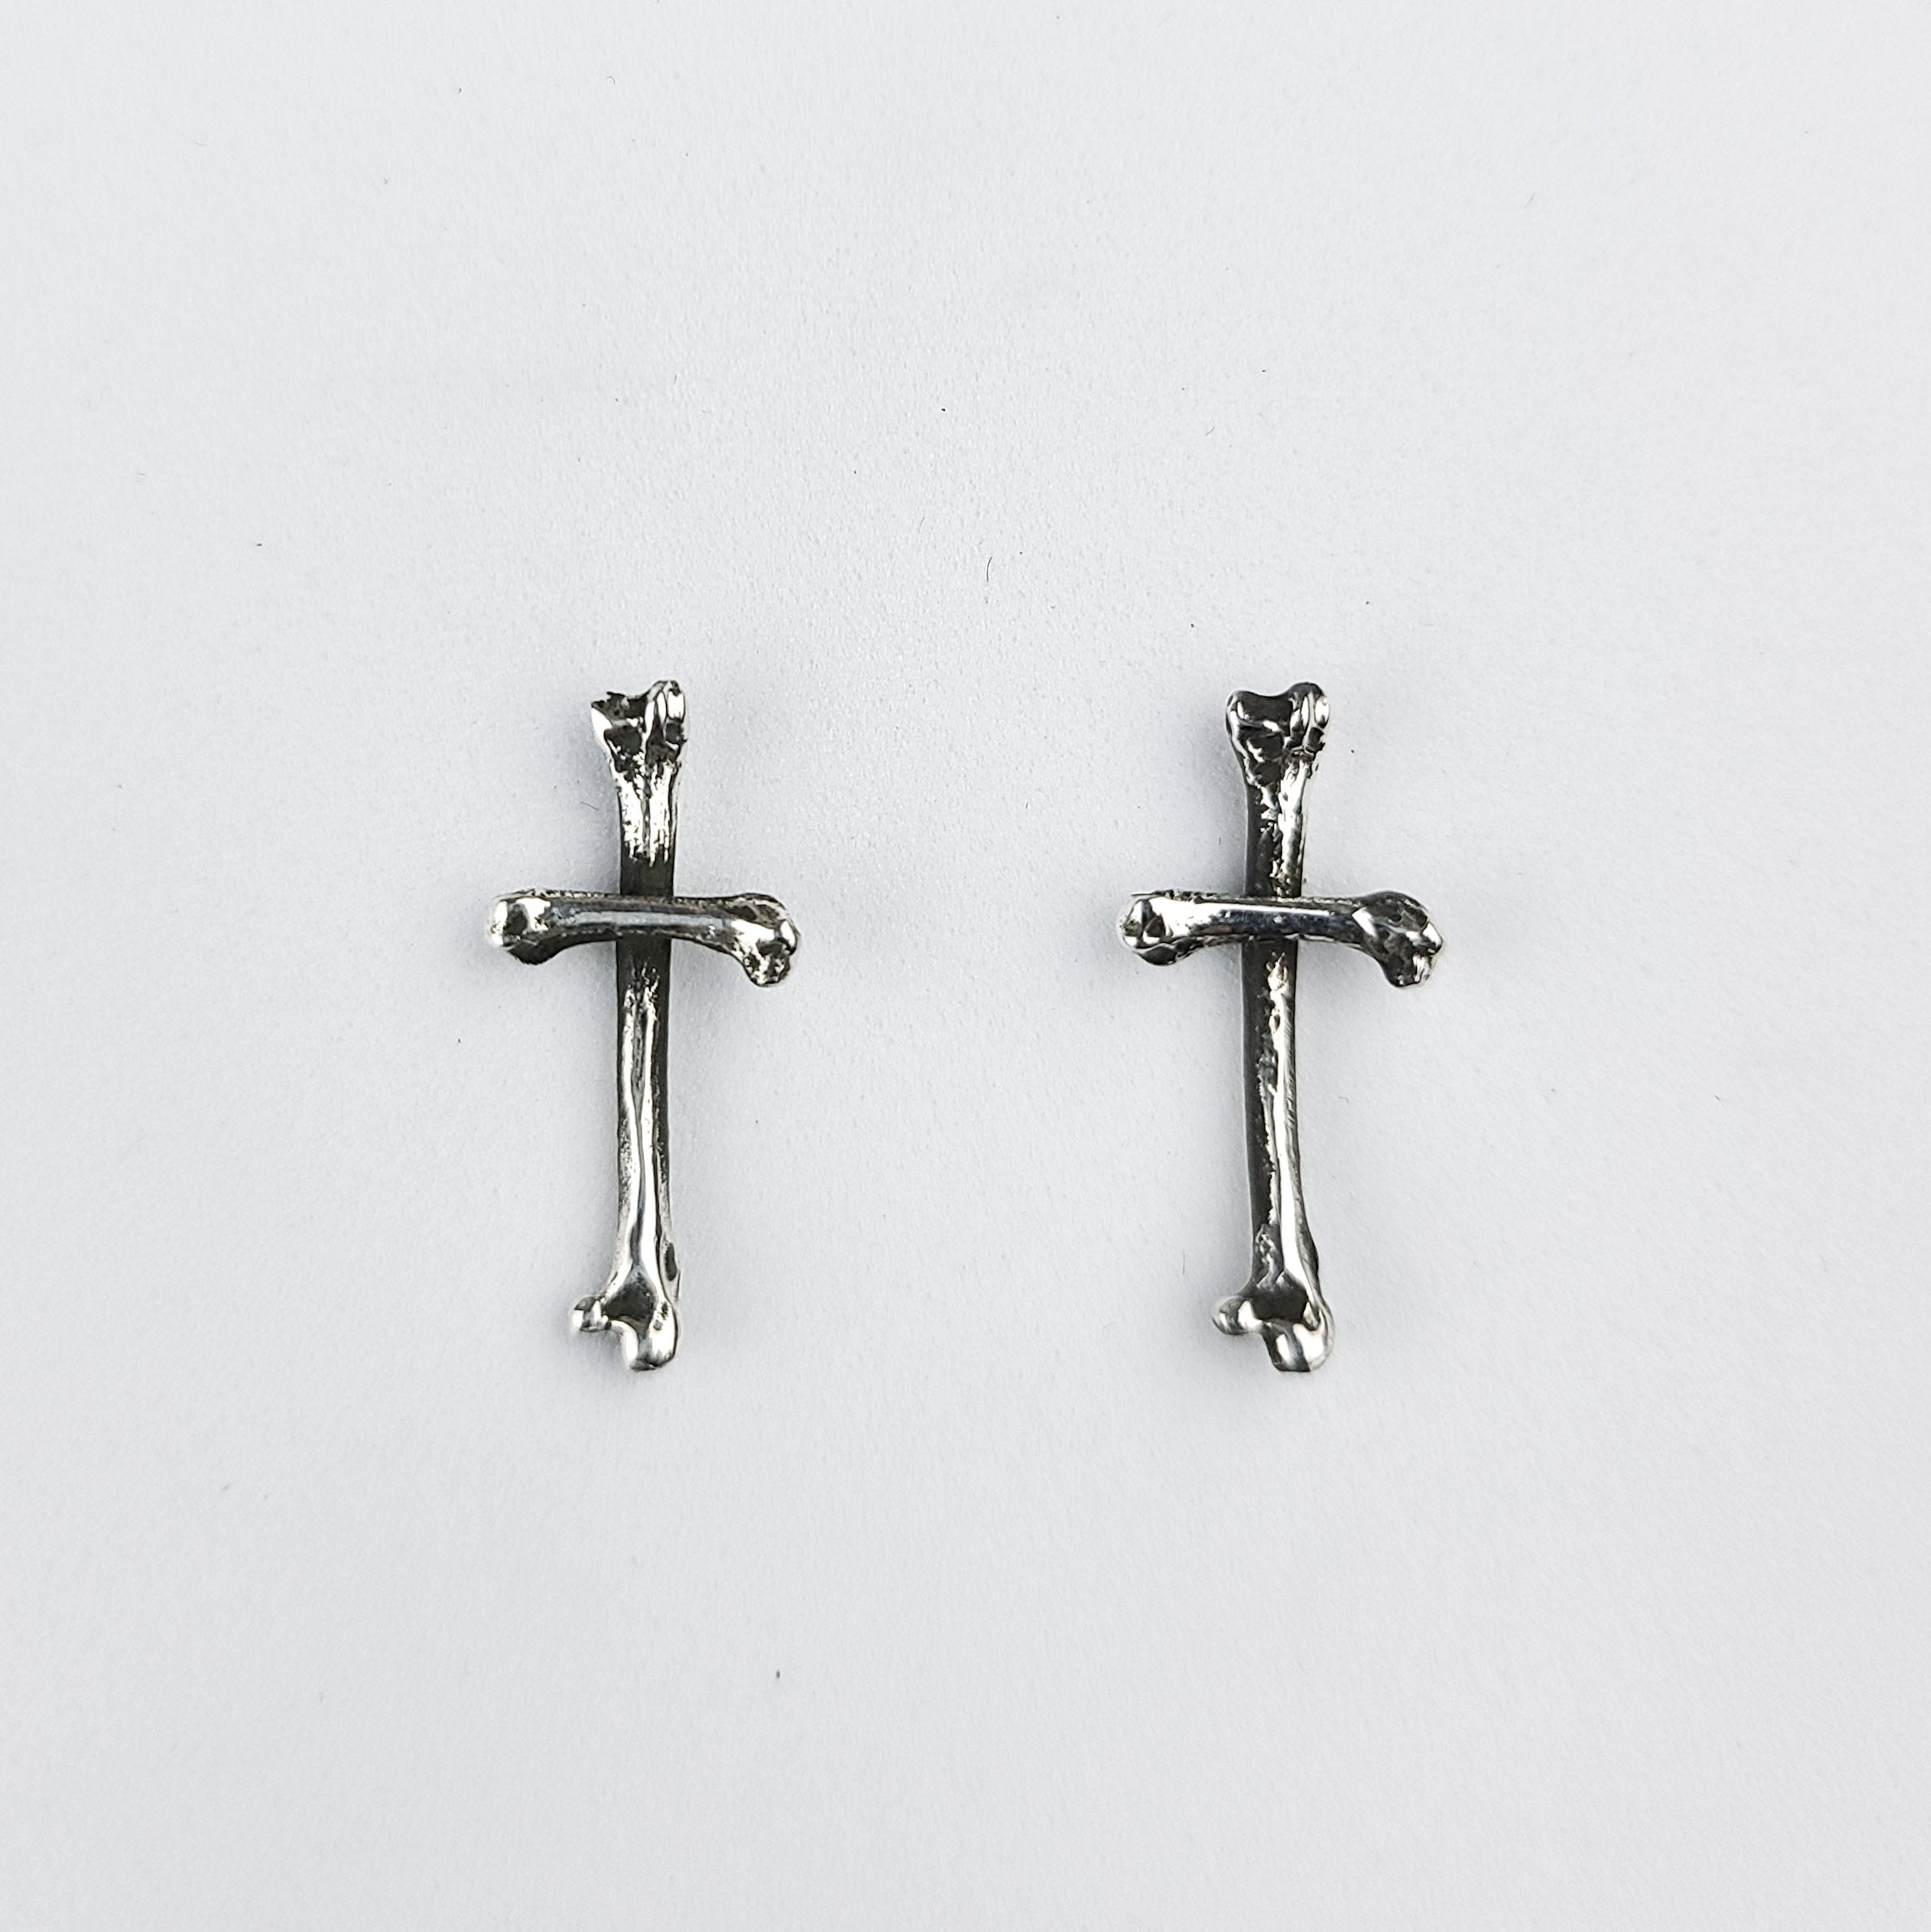 Small Bone Stud Earrings, Tiny Cross Earrings